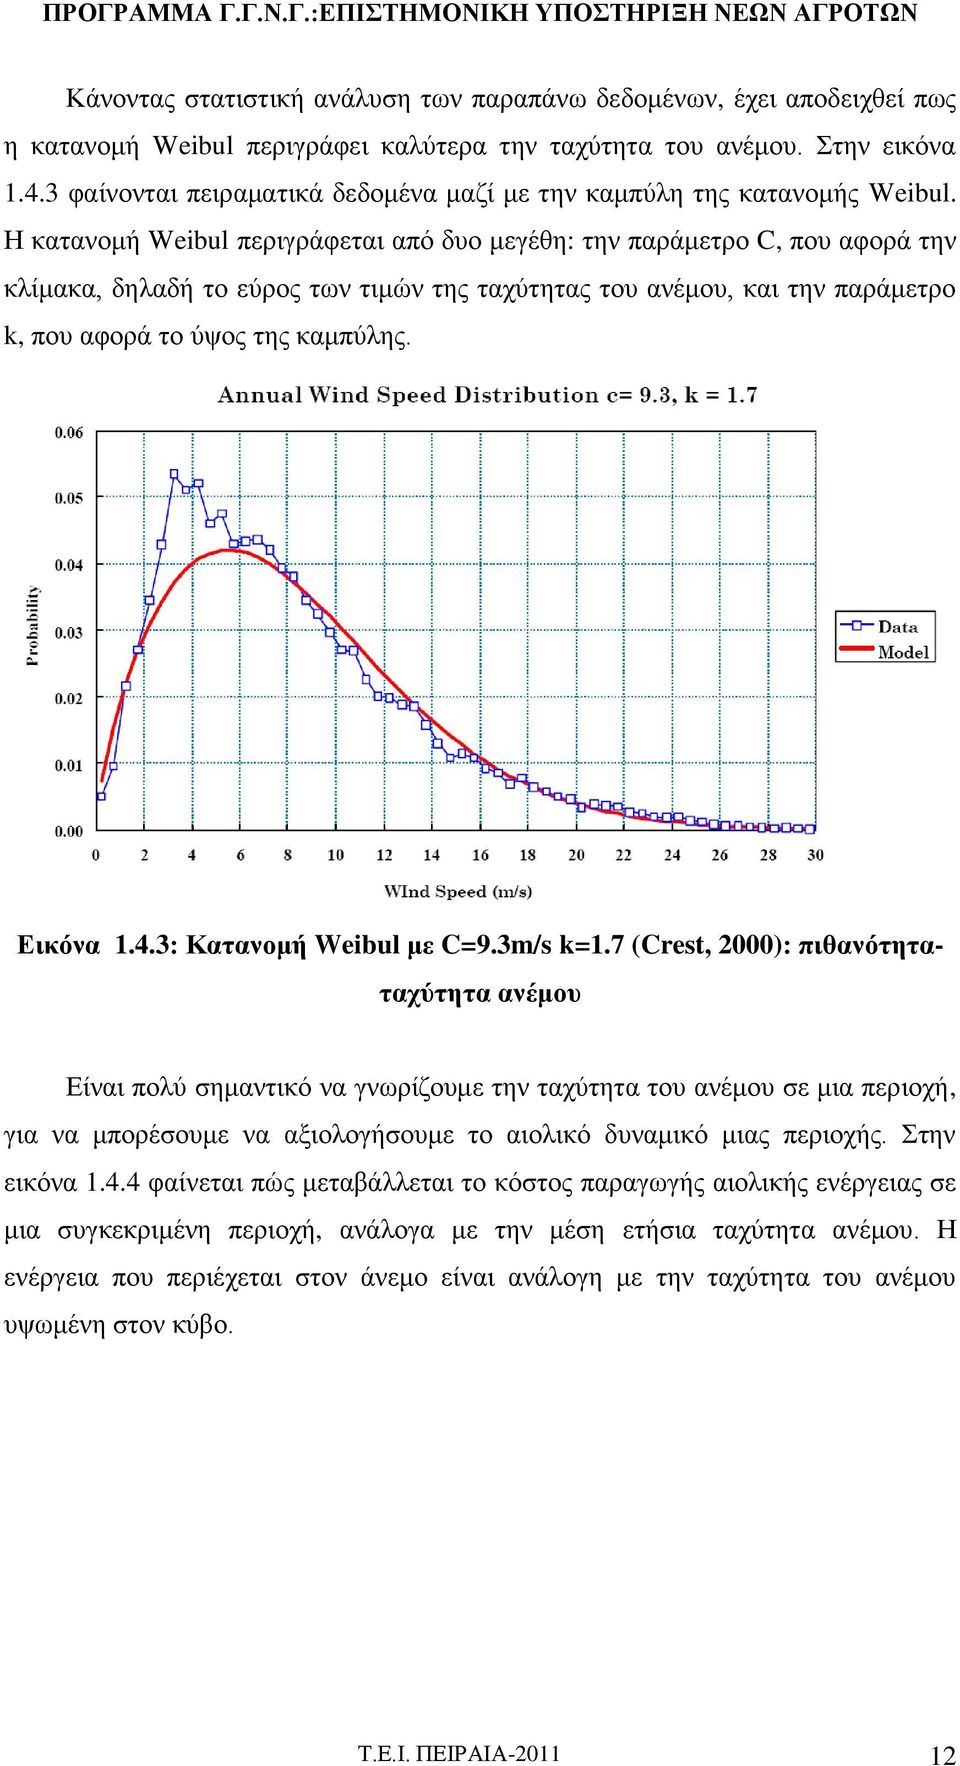 Η κατανομή Weibul περιγράφεται από δυο μεγέθη: την παράμετρο C, που αφορά την κλίμακα, δηλαδή το εύρος των τιμών της ταχύτητας του ανέμου, και την παράμετρο k, που αφορά το ύψος της καμπύλης.